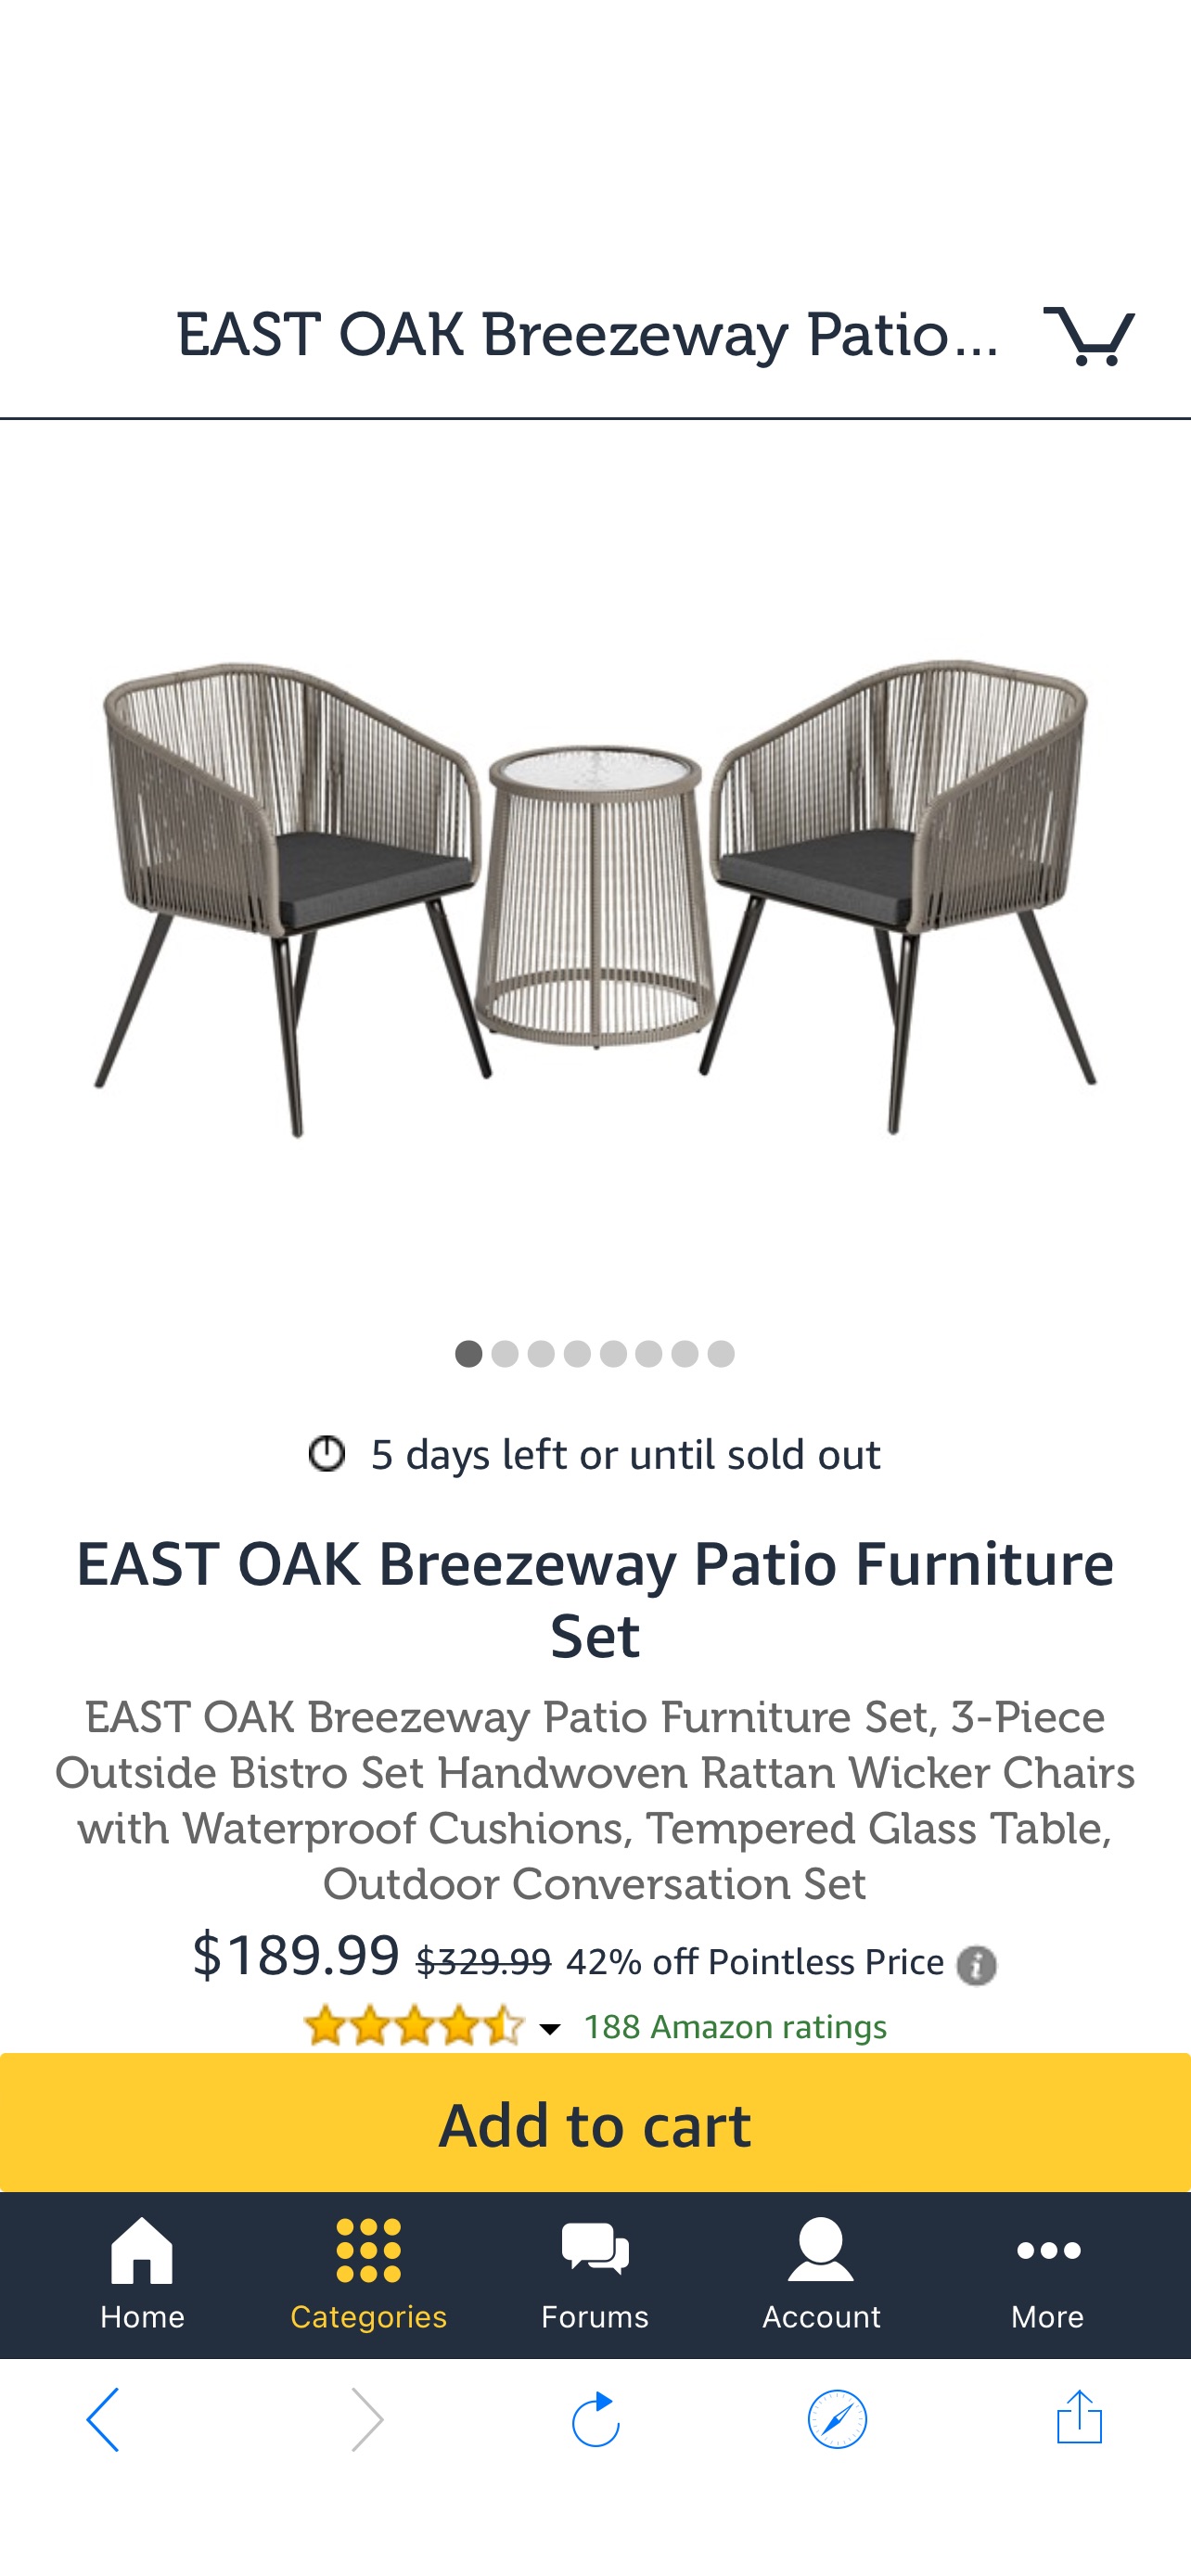 户外桌椅家具套装EAST OAK Breezeway Patio Furniture Set